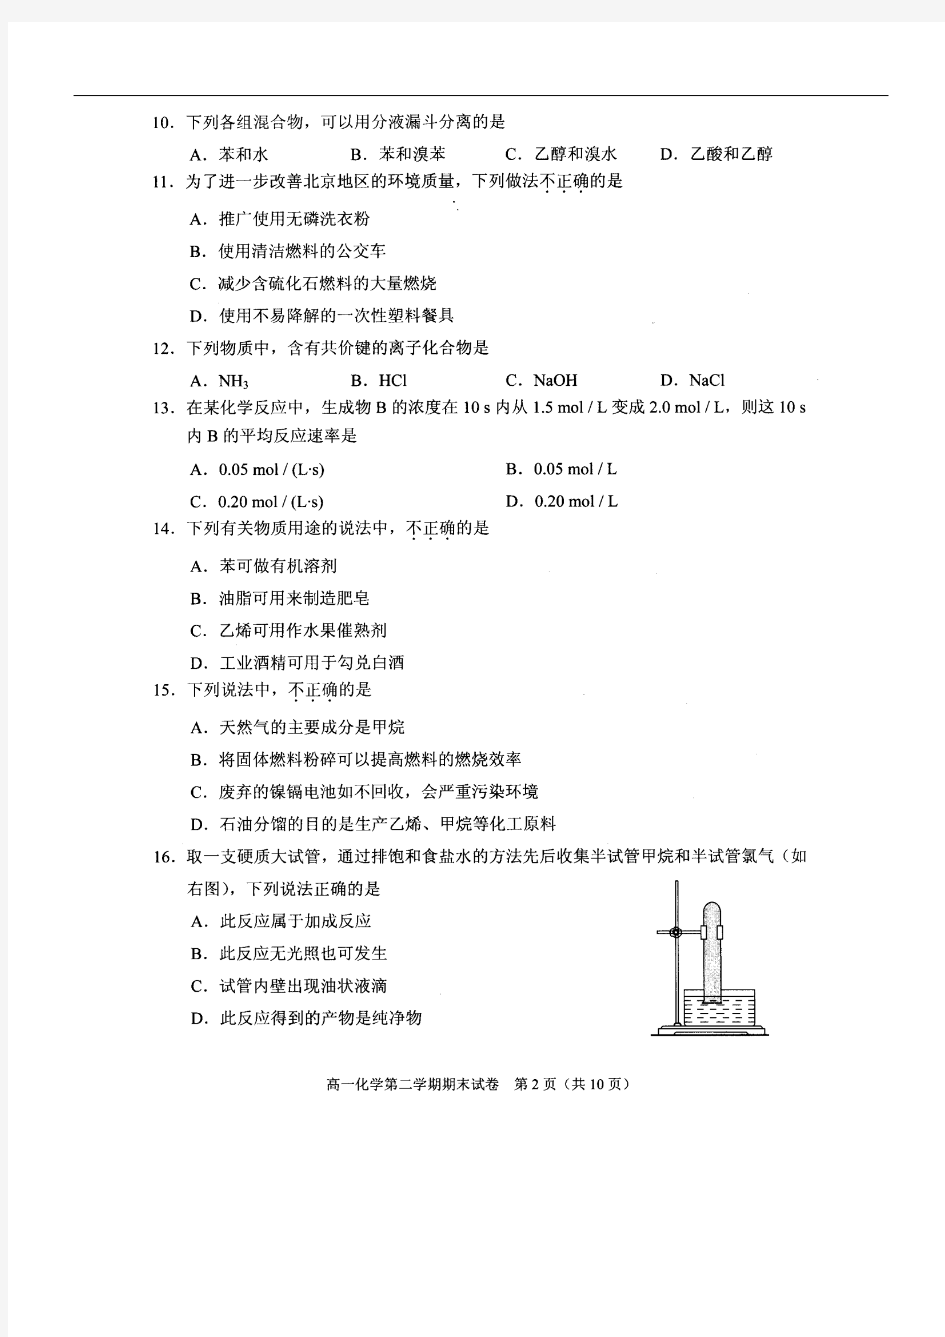 北京市西城区(北区)2012-2013学年度第二学期高一年级化学试卷及答案